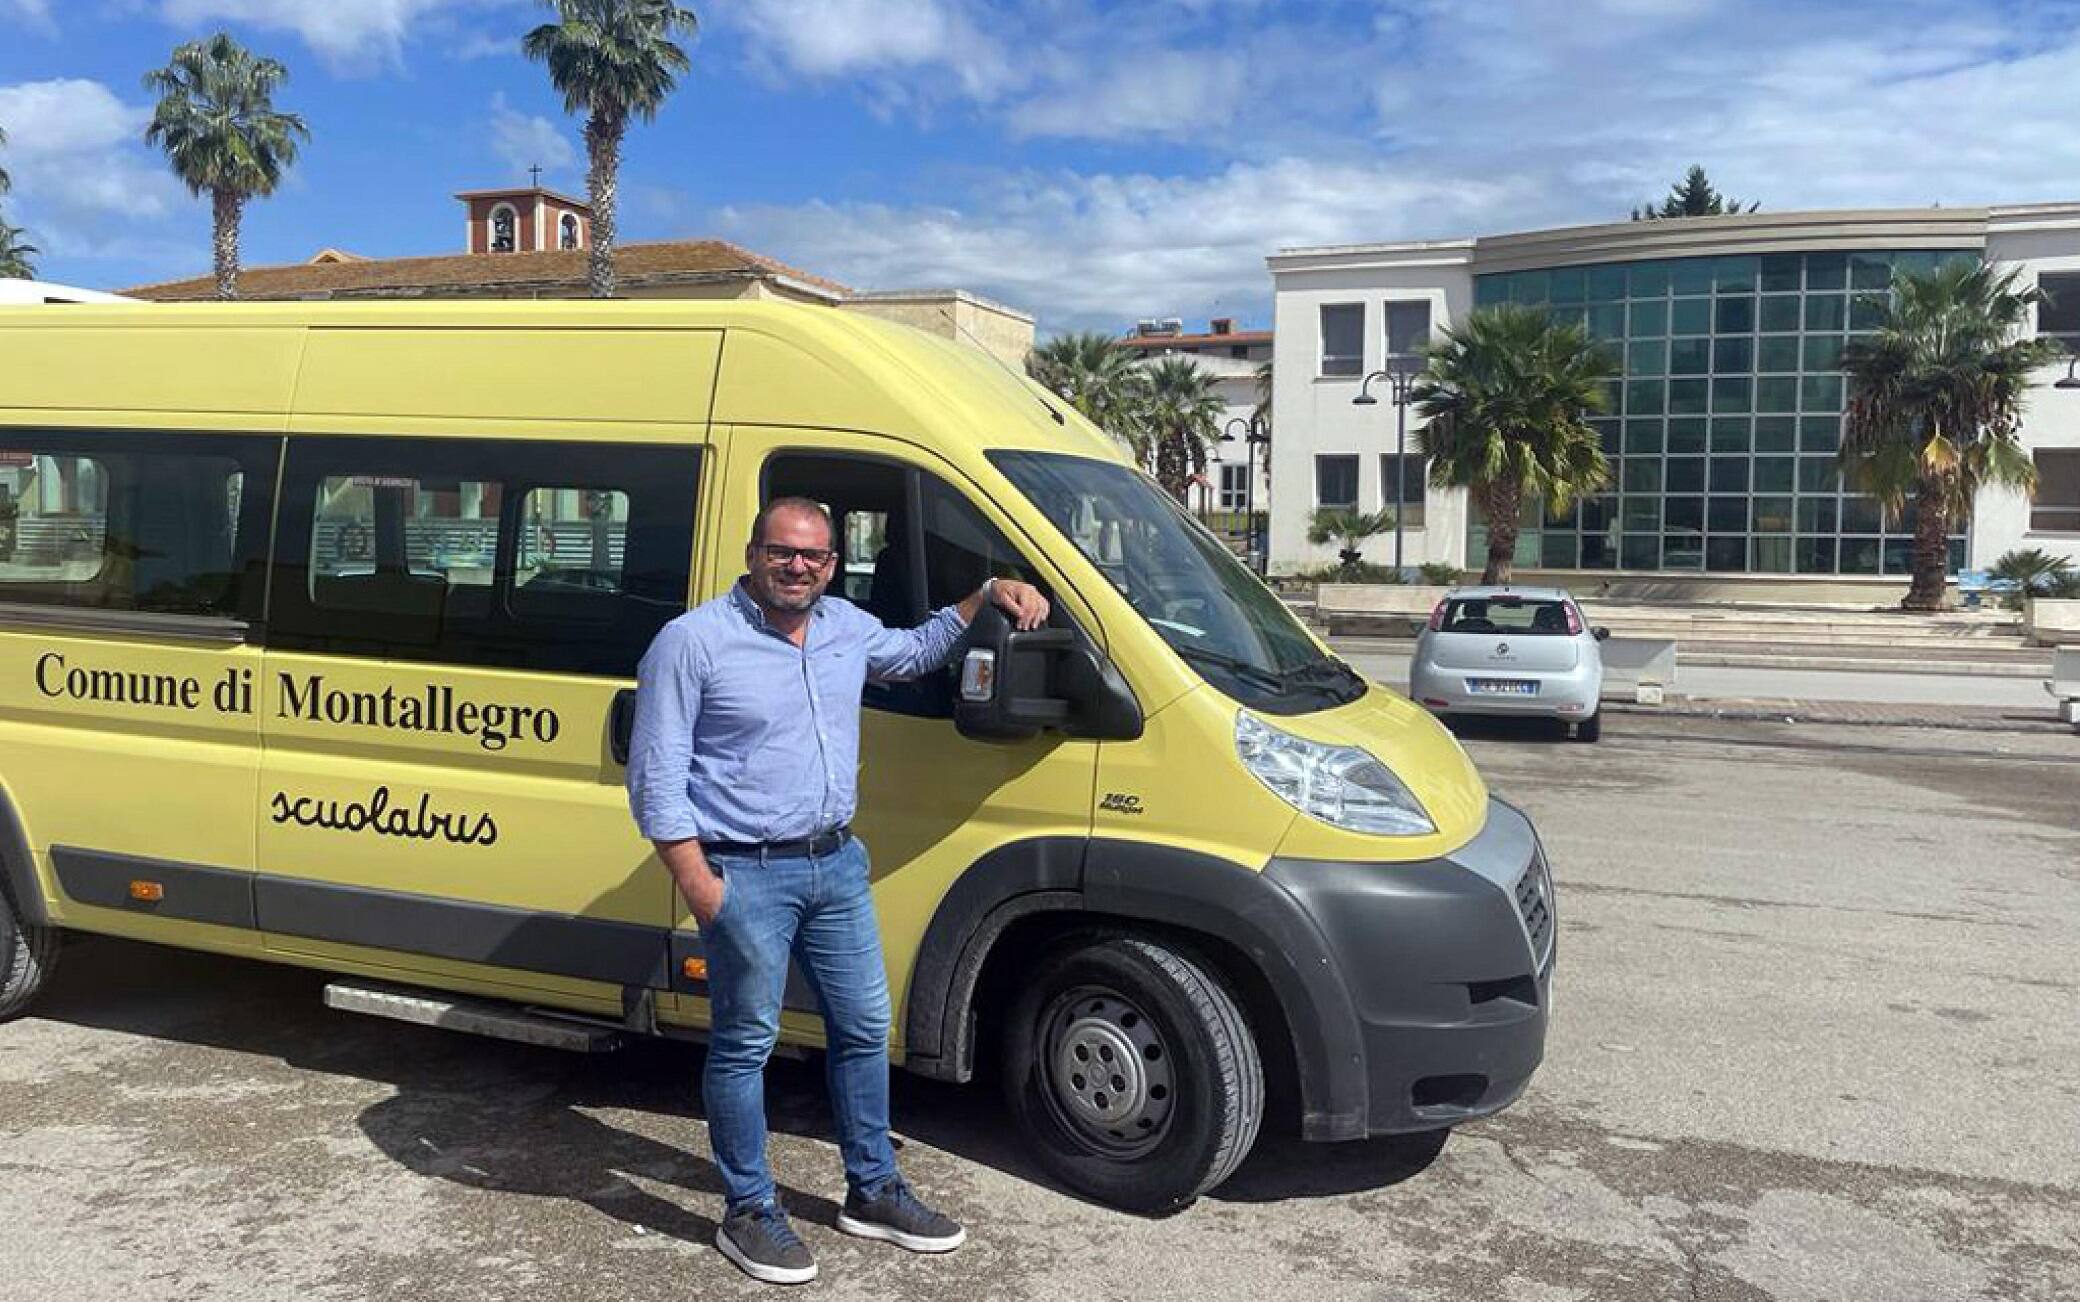 Giovanni Cirillo, sindaco di Montallegro (Agrigento), posa davanti allo scuolabus che guida in mancanza dell'autista per il servizio scuolabus, 10 ottobre 2022. ANSA/ CONCETTA RIZZO